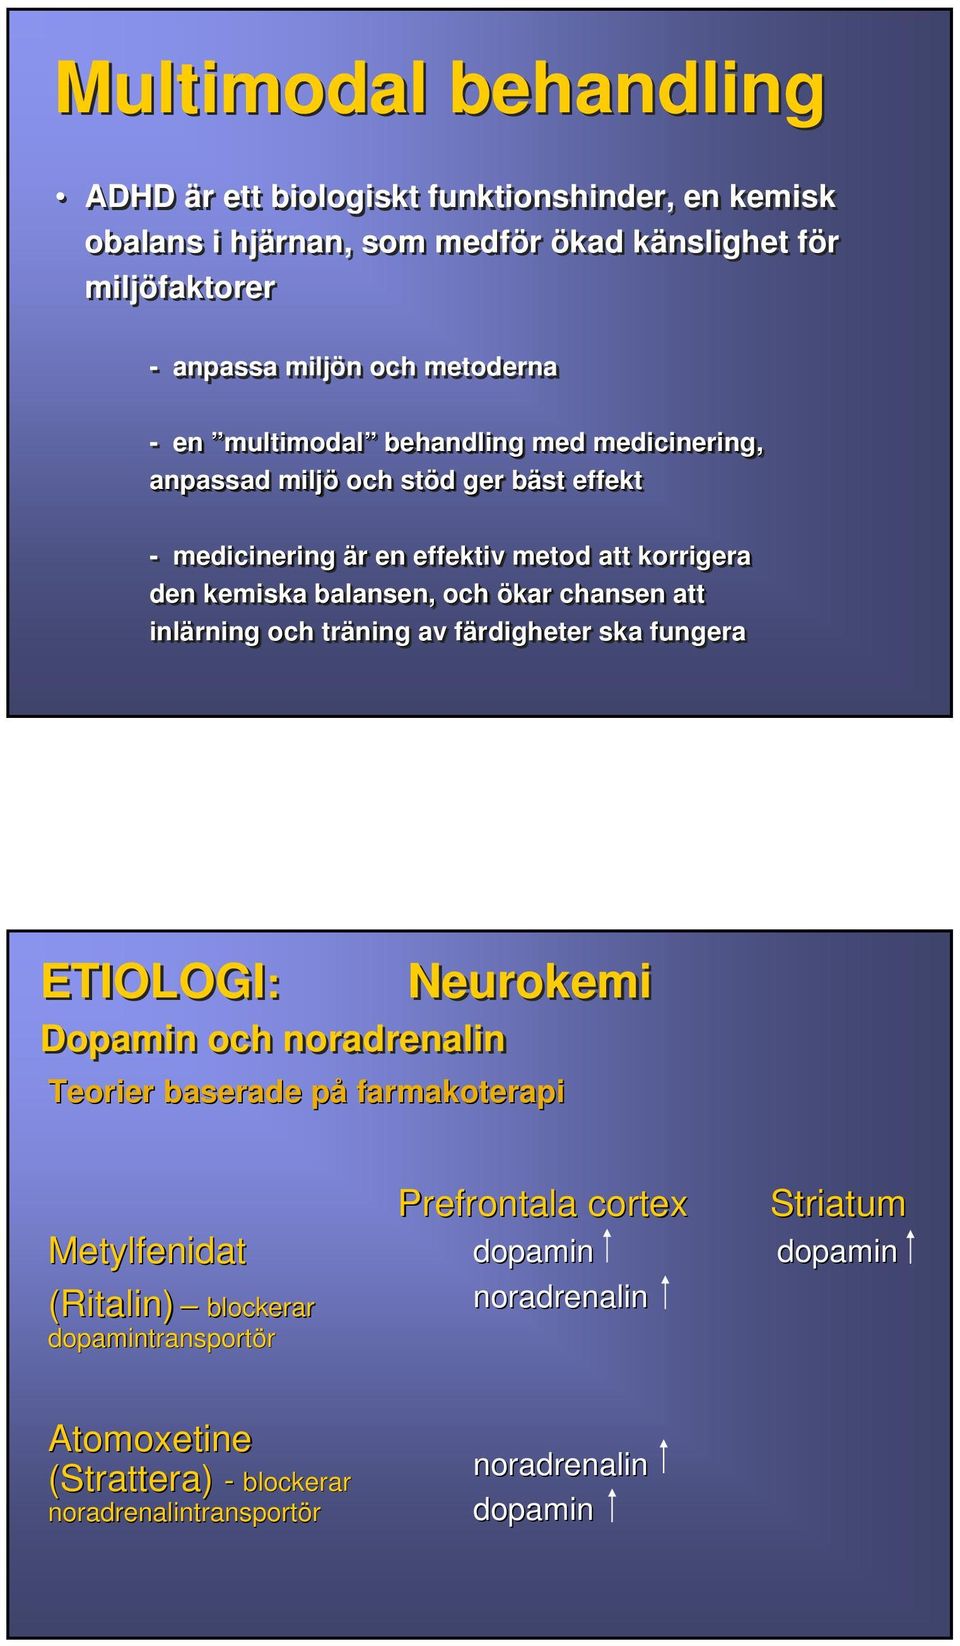 ökar chansen att inlärning och träning av färdigheter f ska fungera ETIOLOGI: Dopamin och noradrenalin Neurokemi Teorier baserade på farmakoterapi Metylfenidat